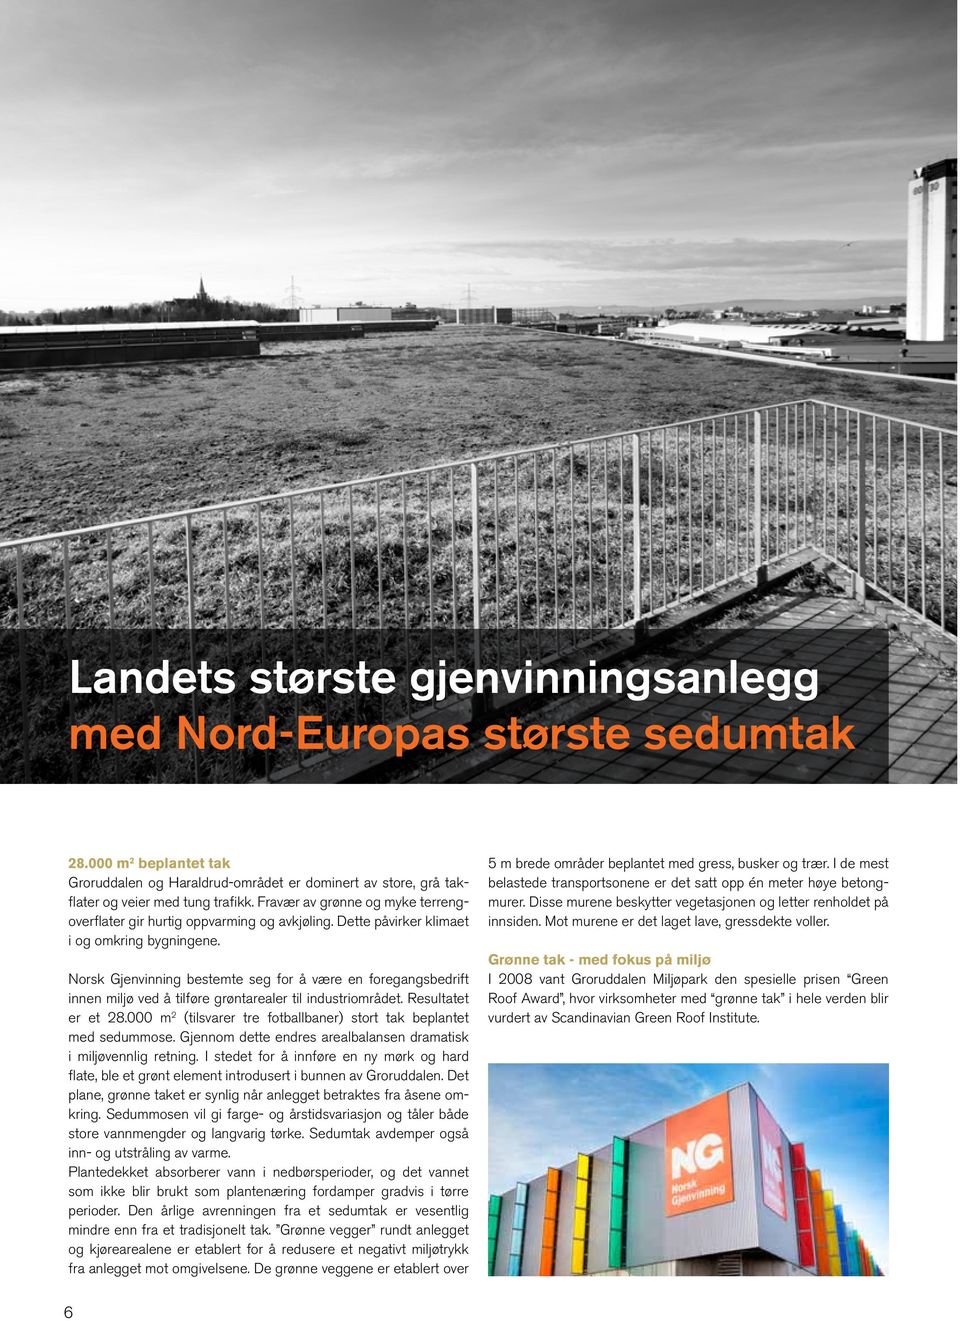 Norsk Gjenvinning bestemte seg for å være en foregangsbedrift innen miljø ved å tilføre grøntarealer til industriområdet. Resultatet er et 28.